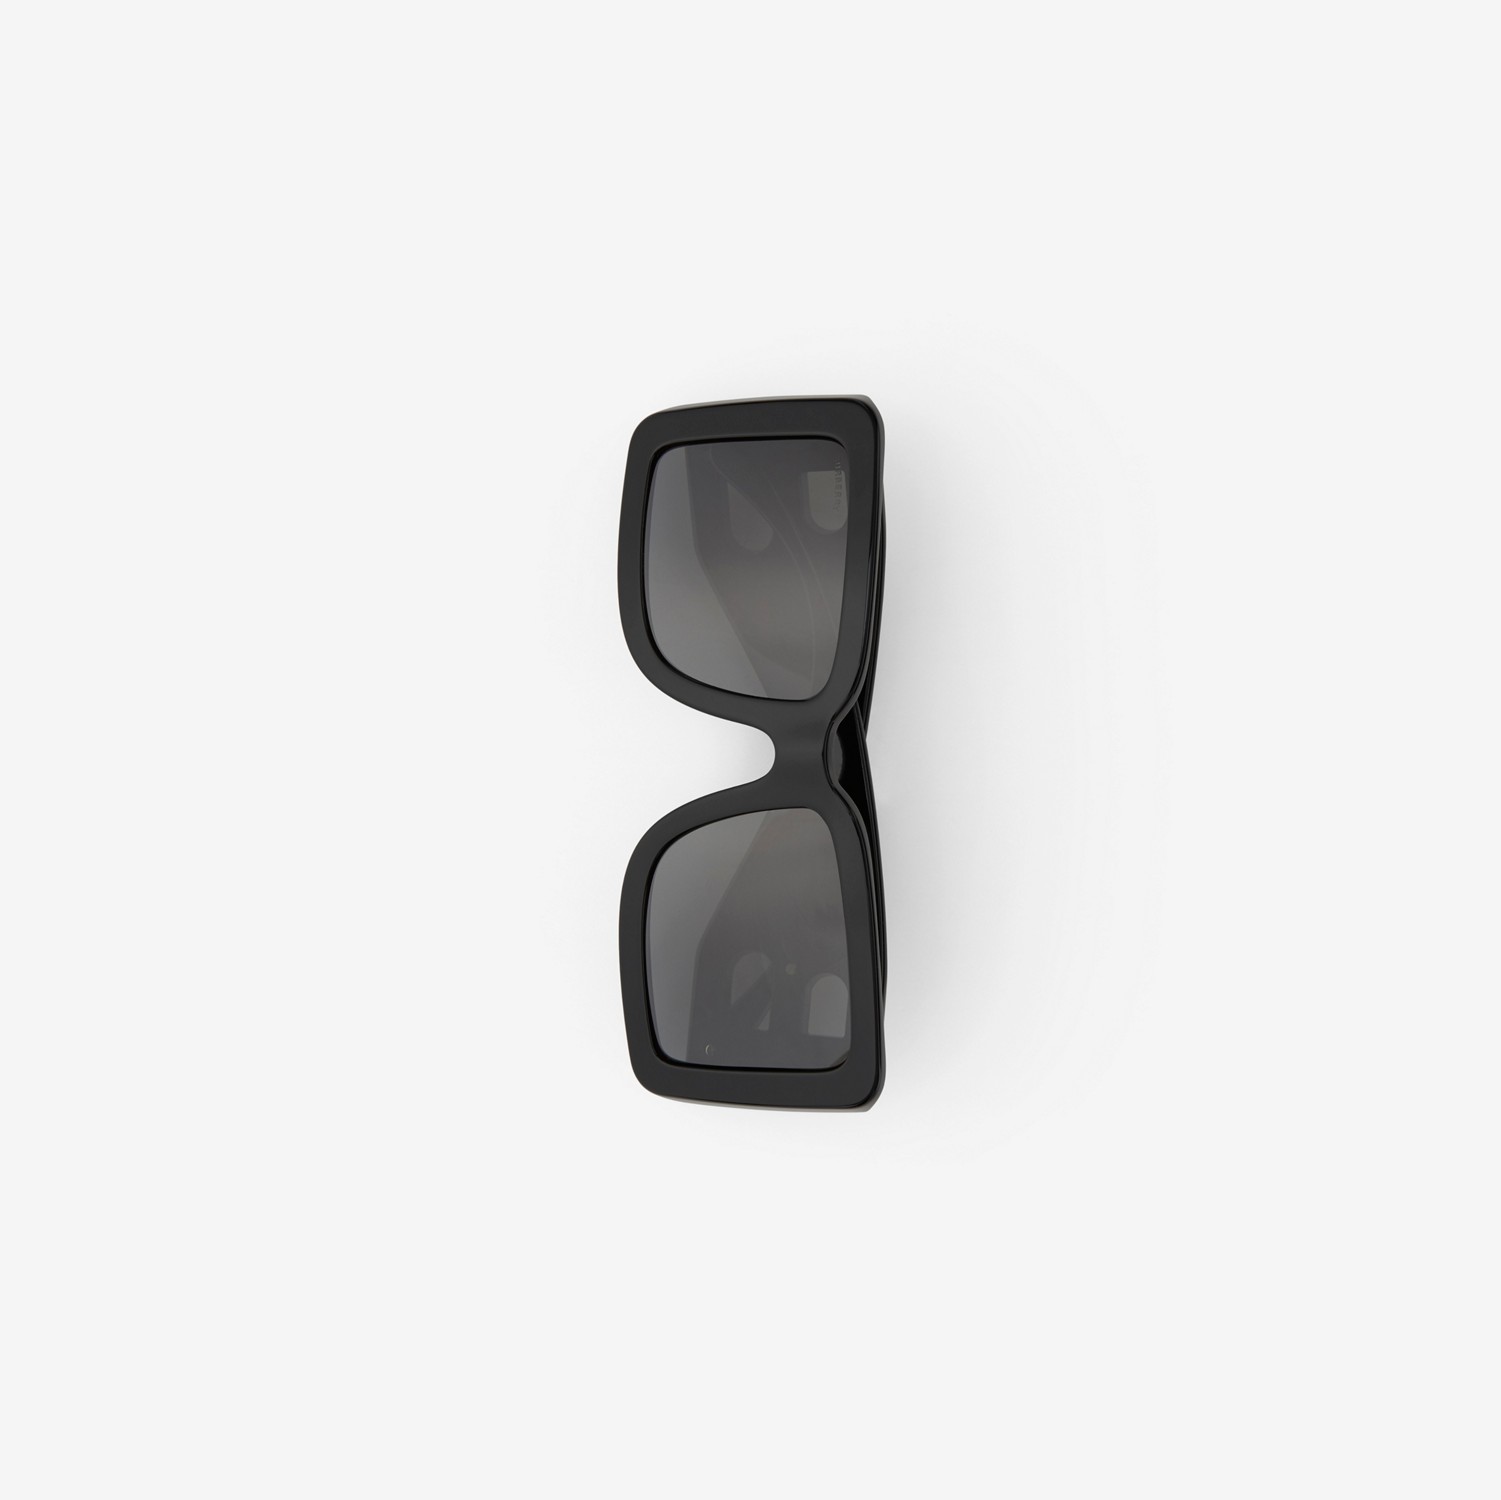 Óculos de sol com armação quadrada e logotipo B (Preto) | Burberry® oficial